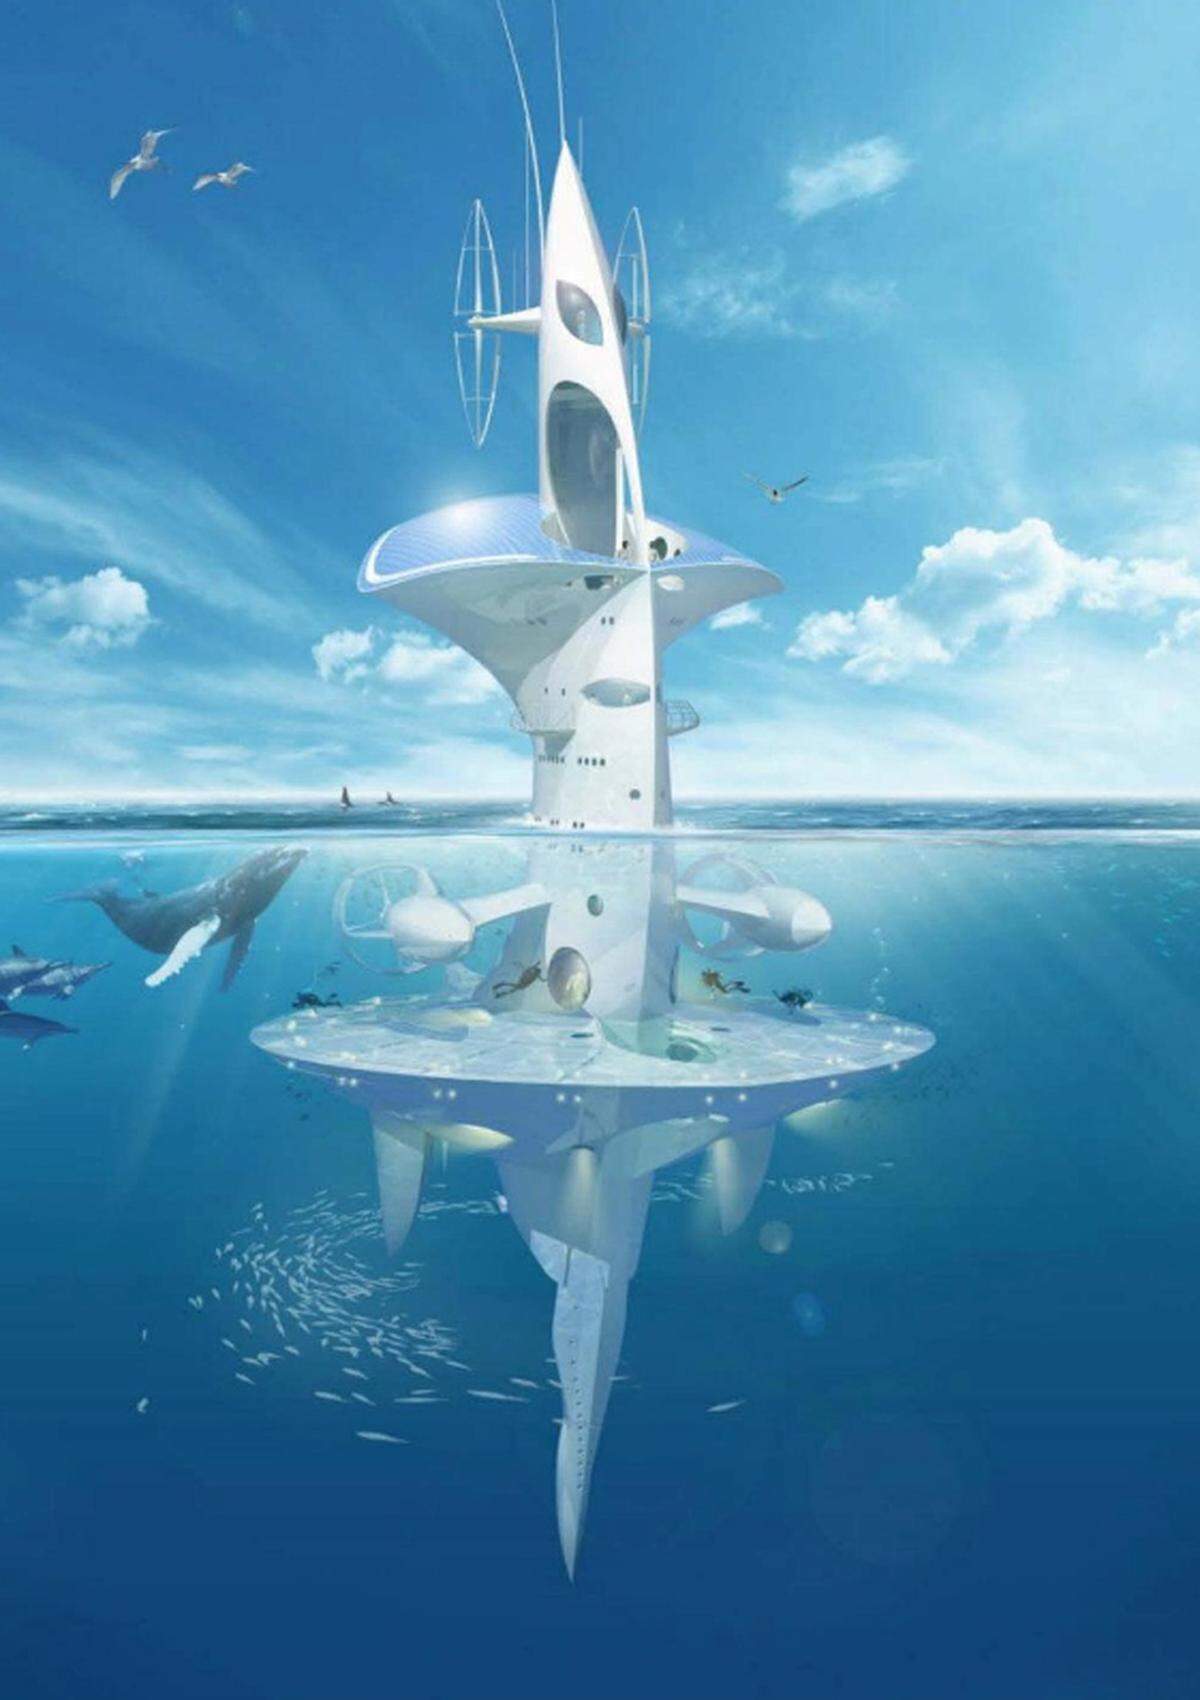 Rougerie ist für seine außergewöhnlichen Ideen bekannt, die zwar fantastisch aussehen, aber auch umgesetzt werden. Der SeaOrbiter, quasi ein Marine-Wolkenkrater, befindet sich mittlerweile in Bau.